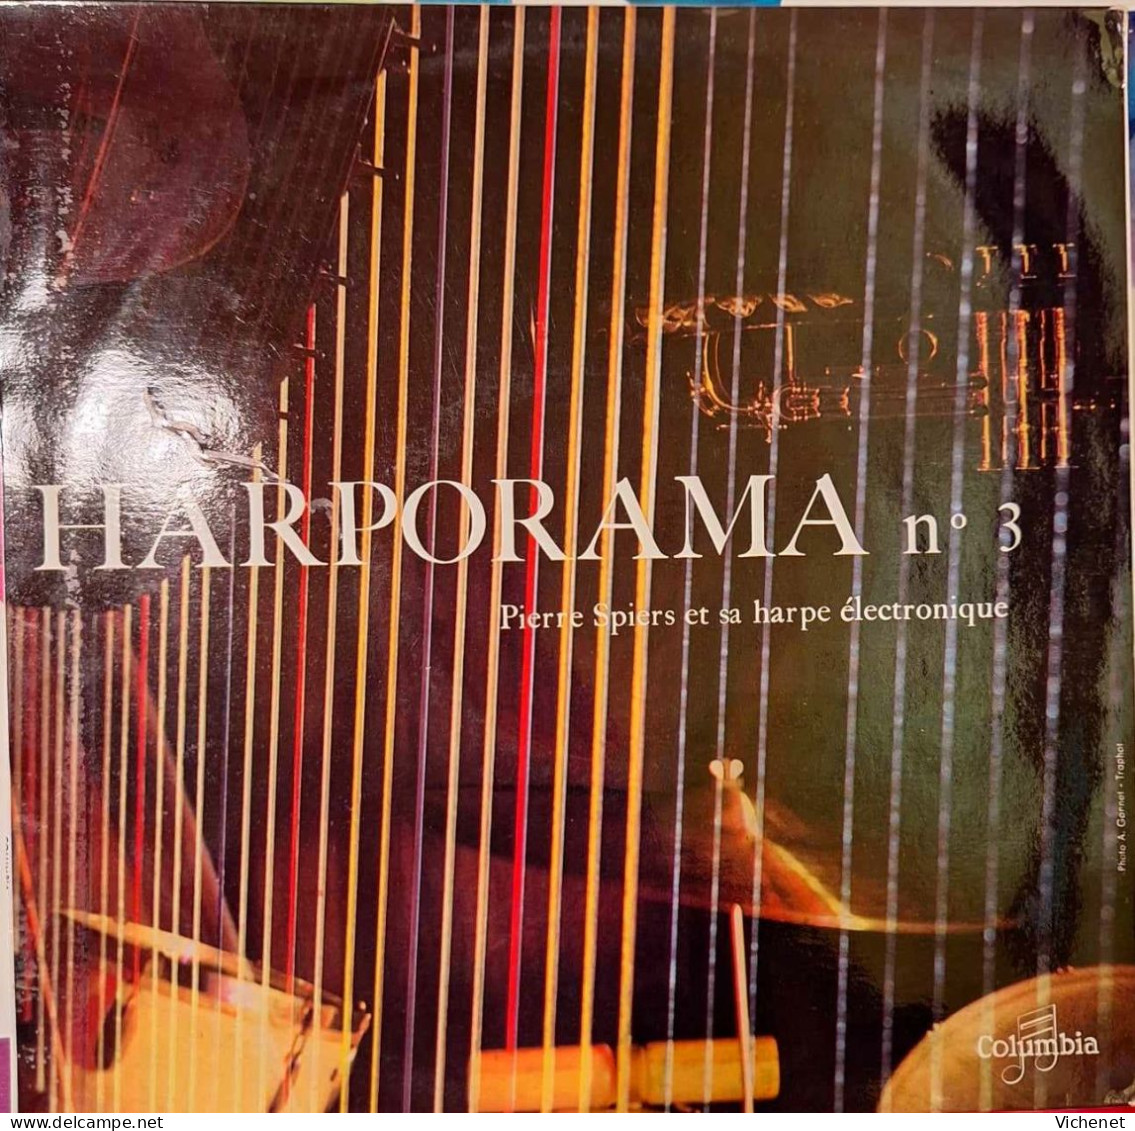 Pierre Spiers Et Sa Harpe Electronique - Harporama N° 3 - 25 Cm - Formats Spéciaux